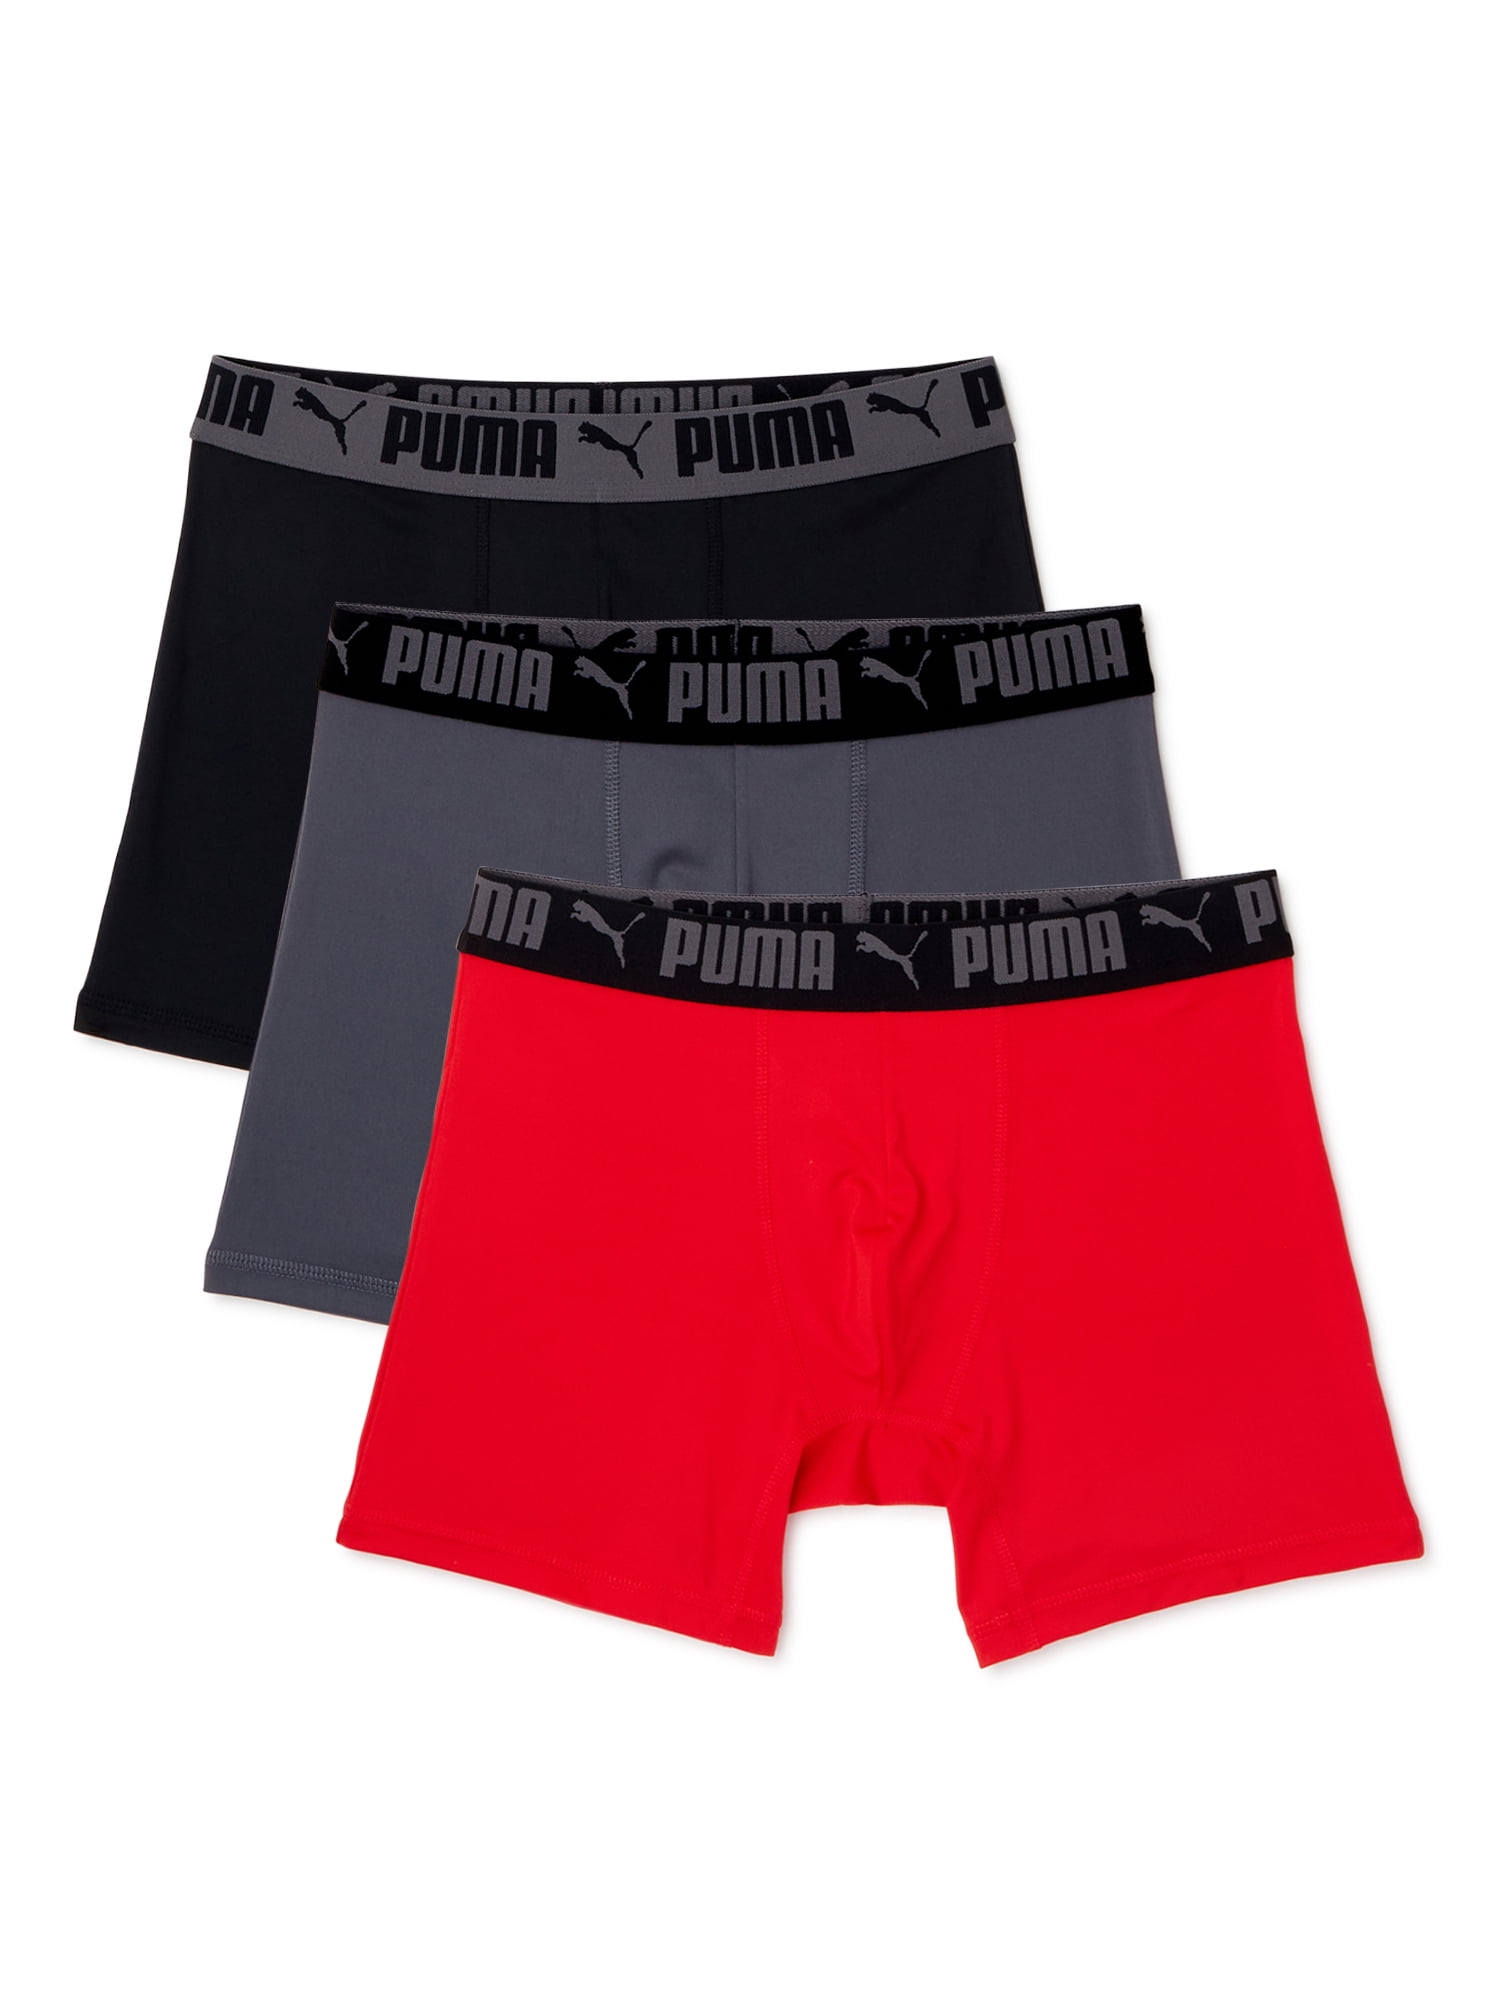 PUMA - Puma Men's Boxer Briefs, 3-Pack - Walmart.com - Walmart.com